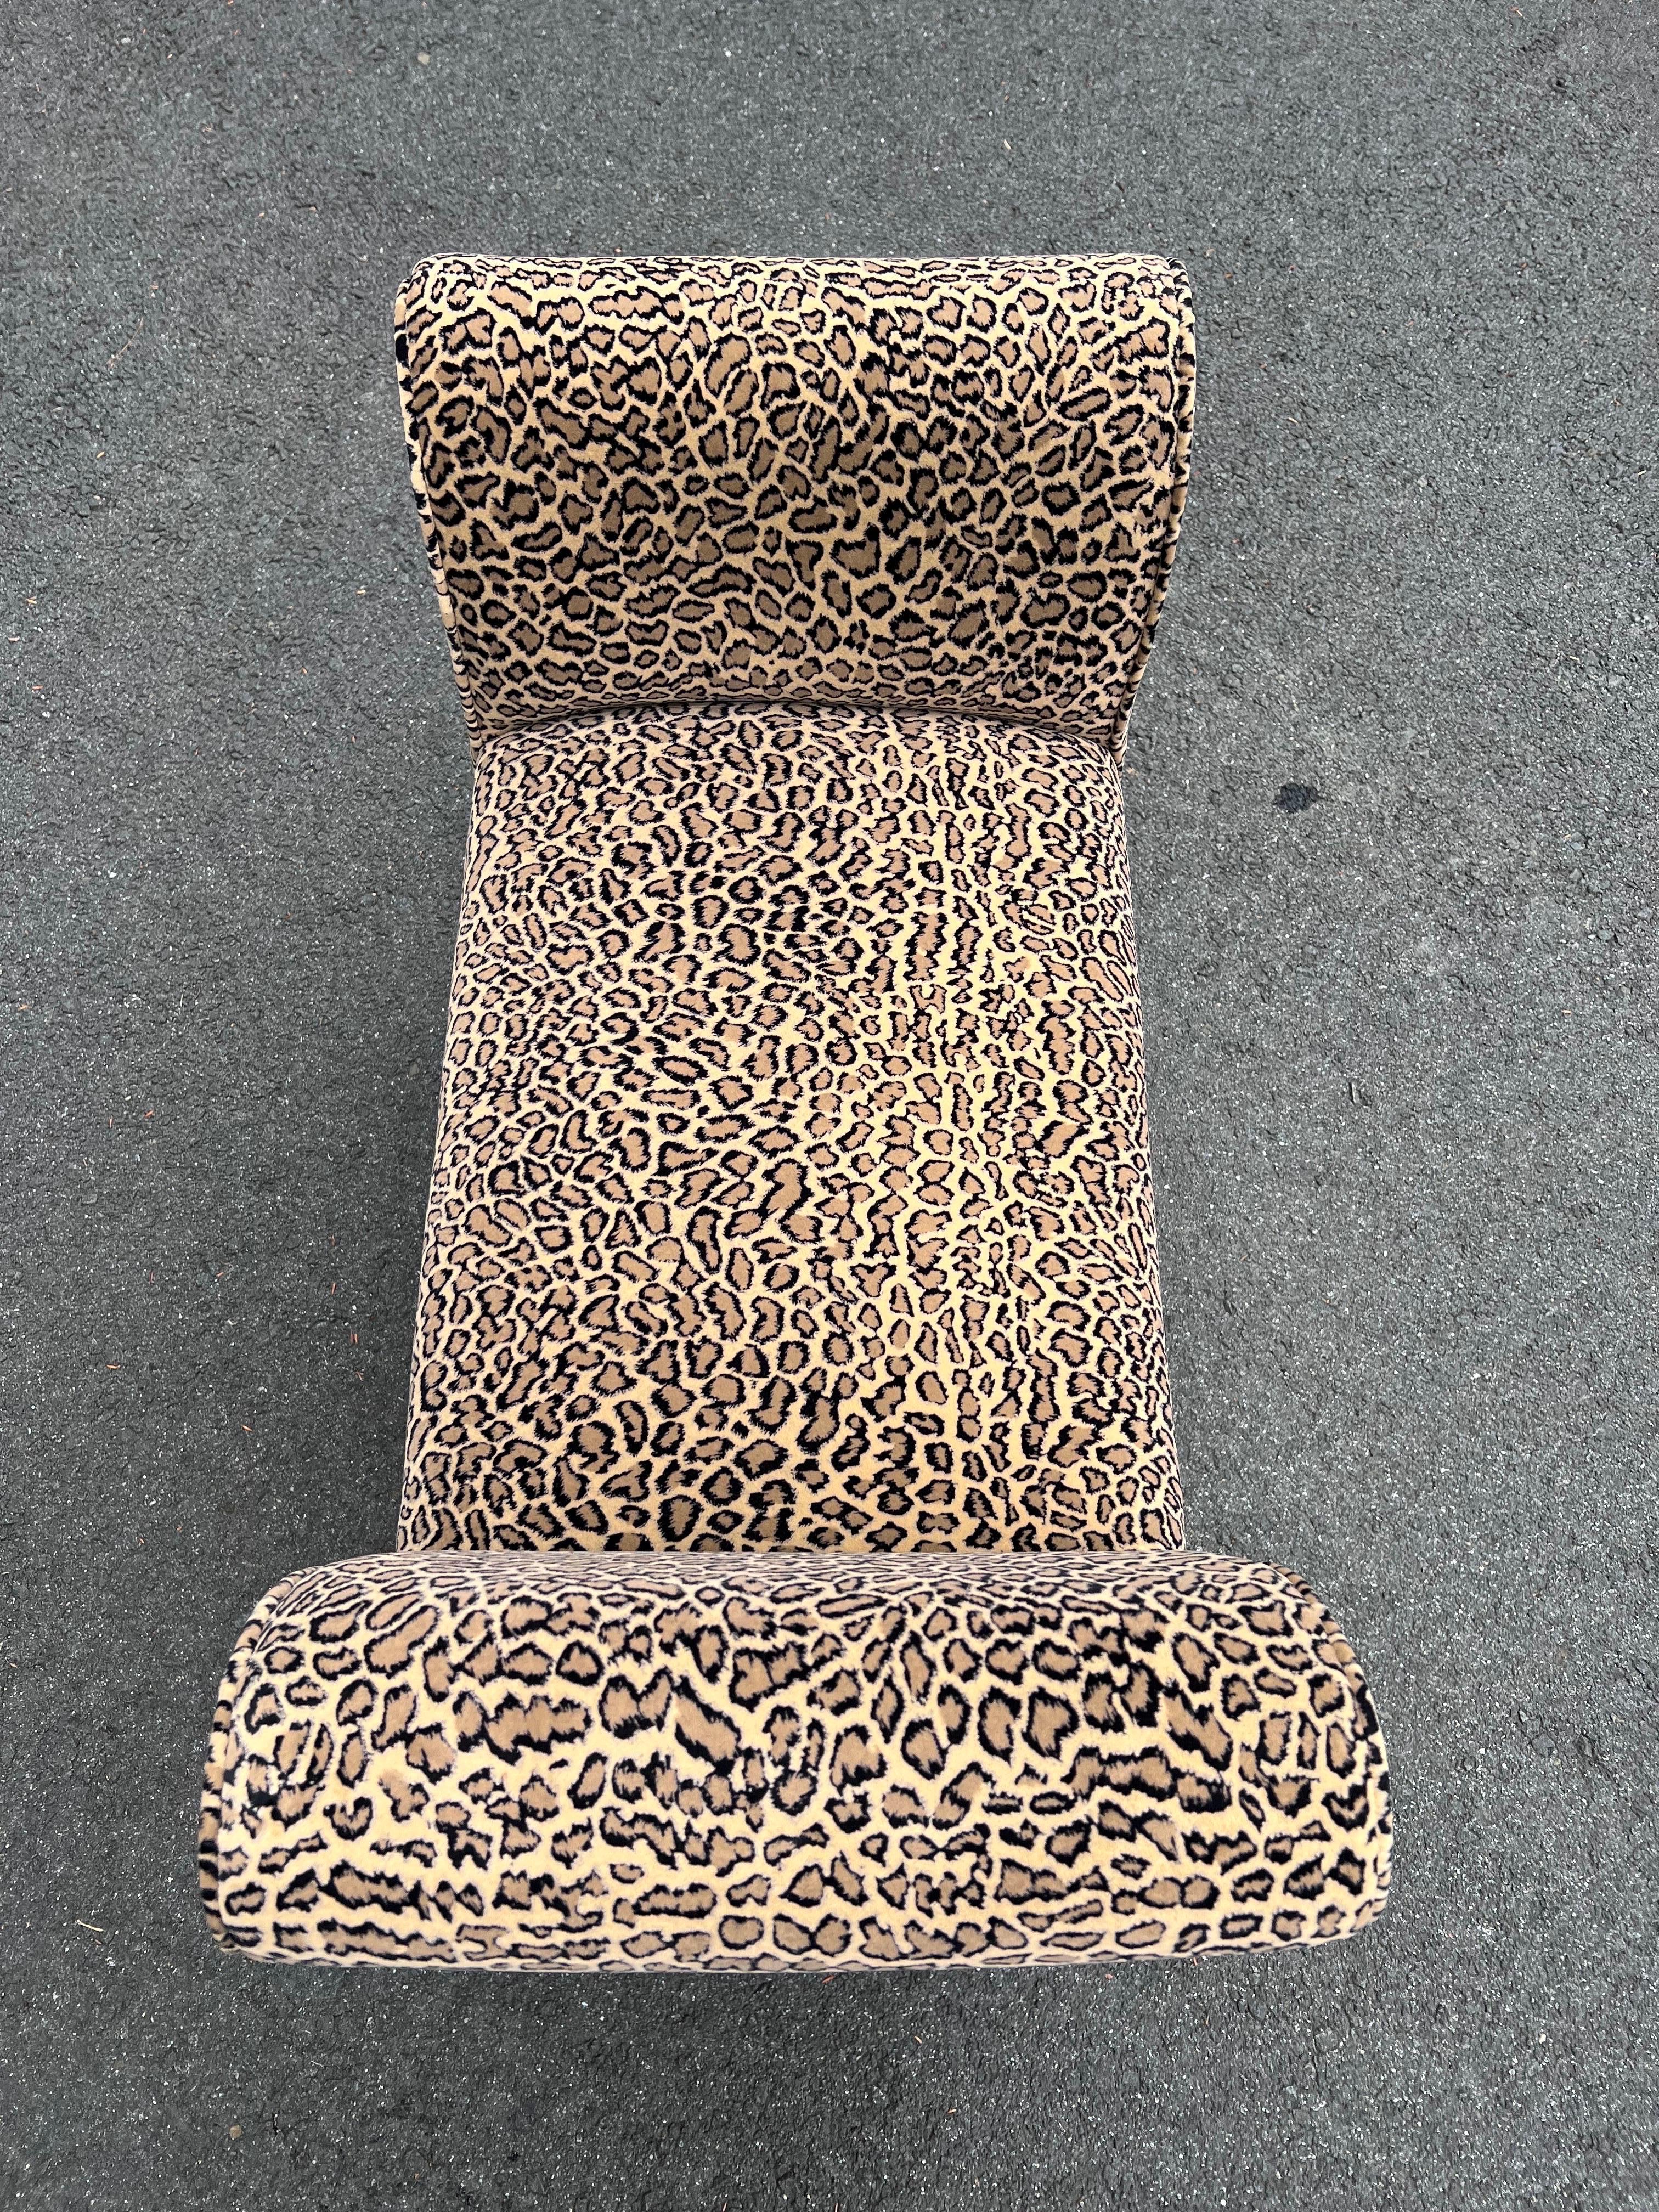 Leopard Patterned Upholstered Bench For Sale 5